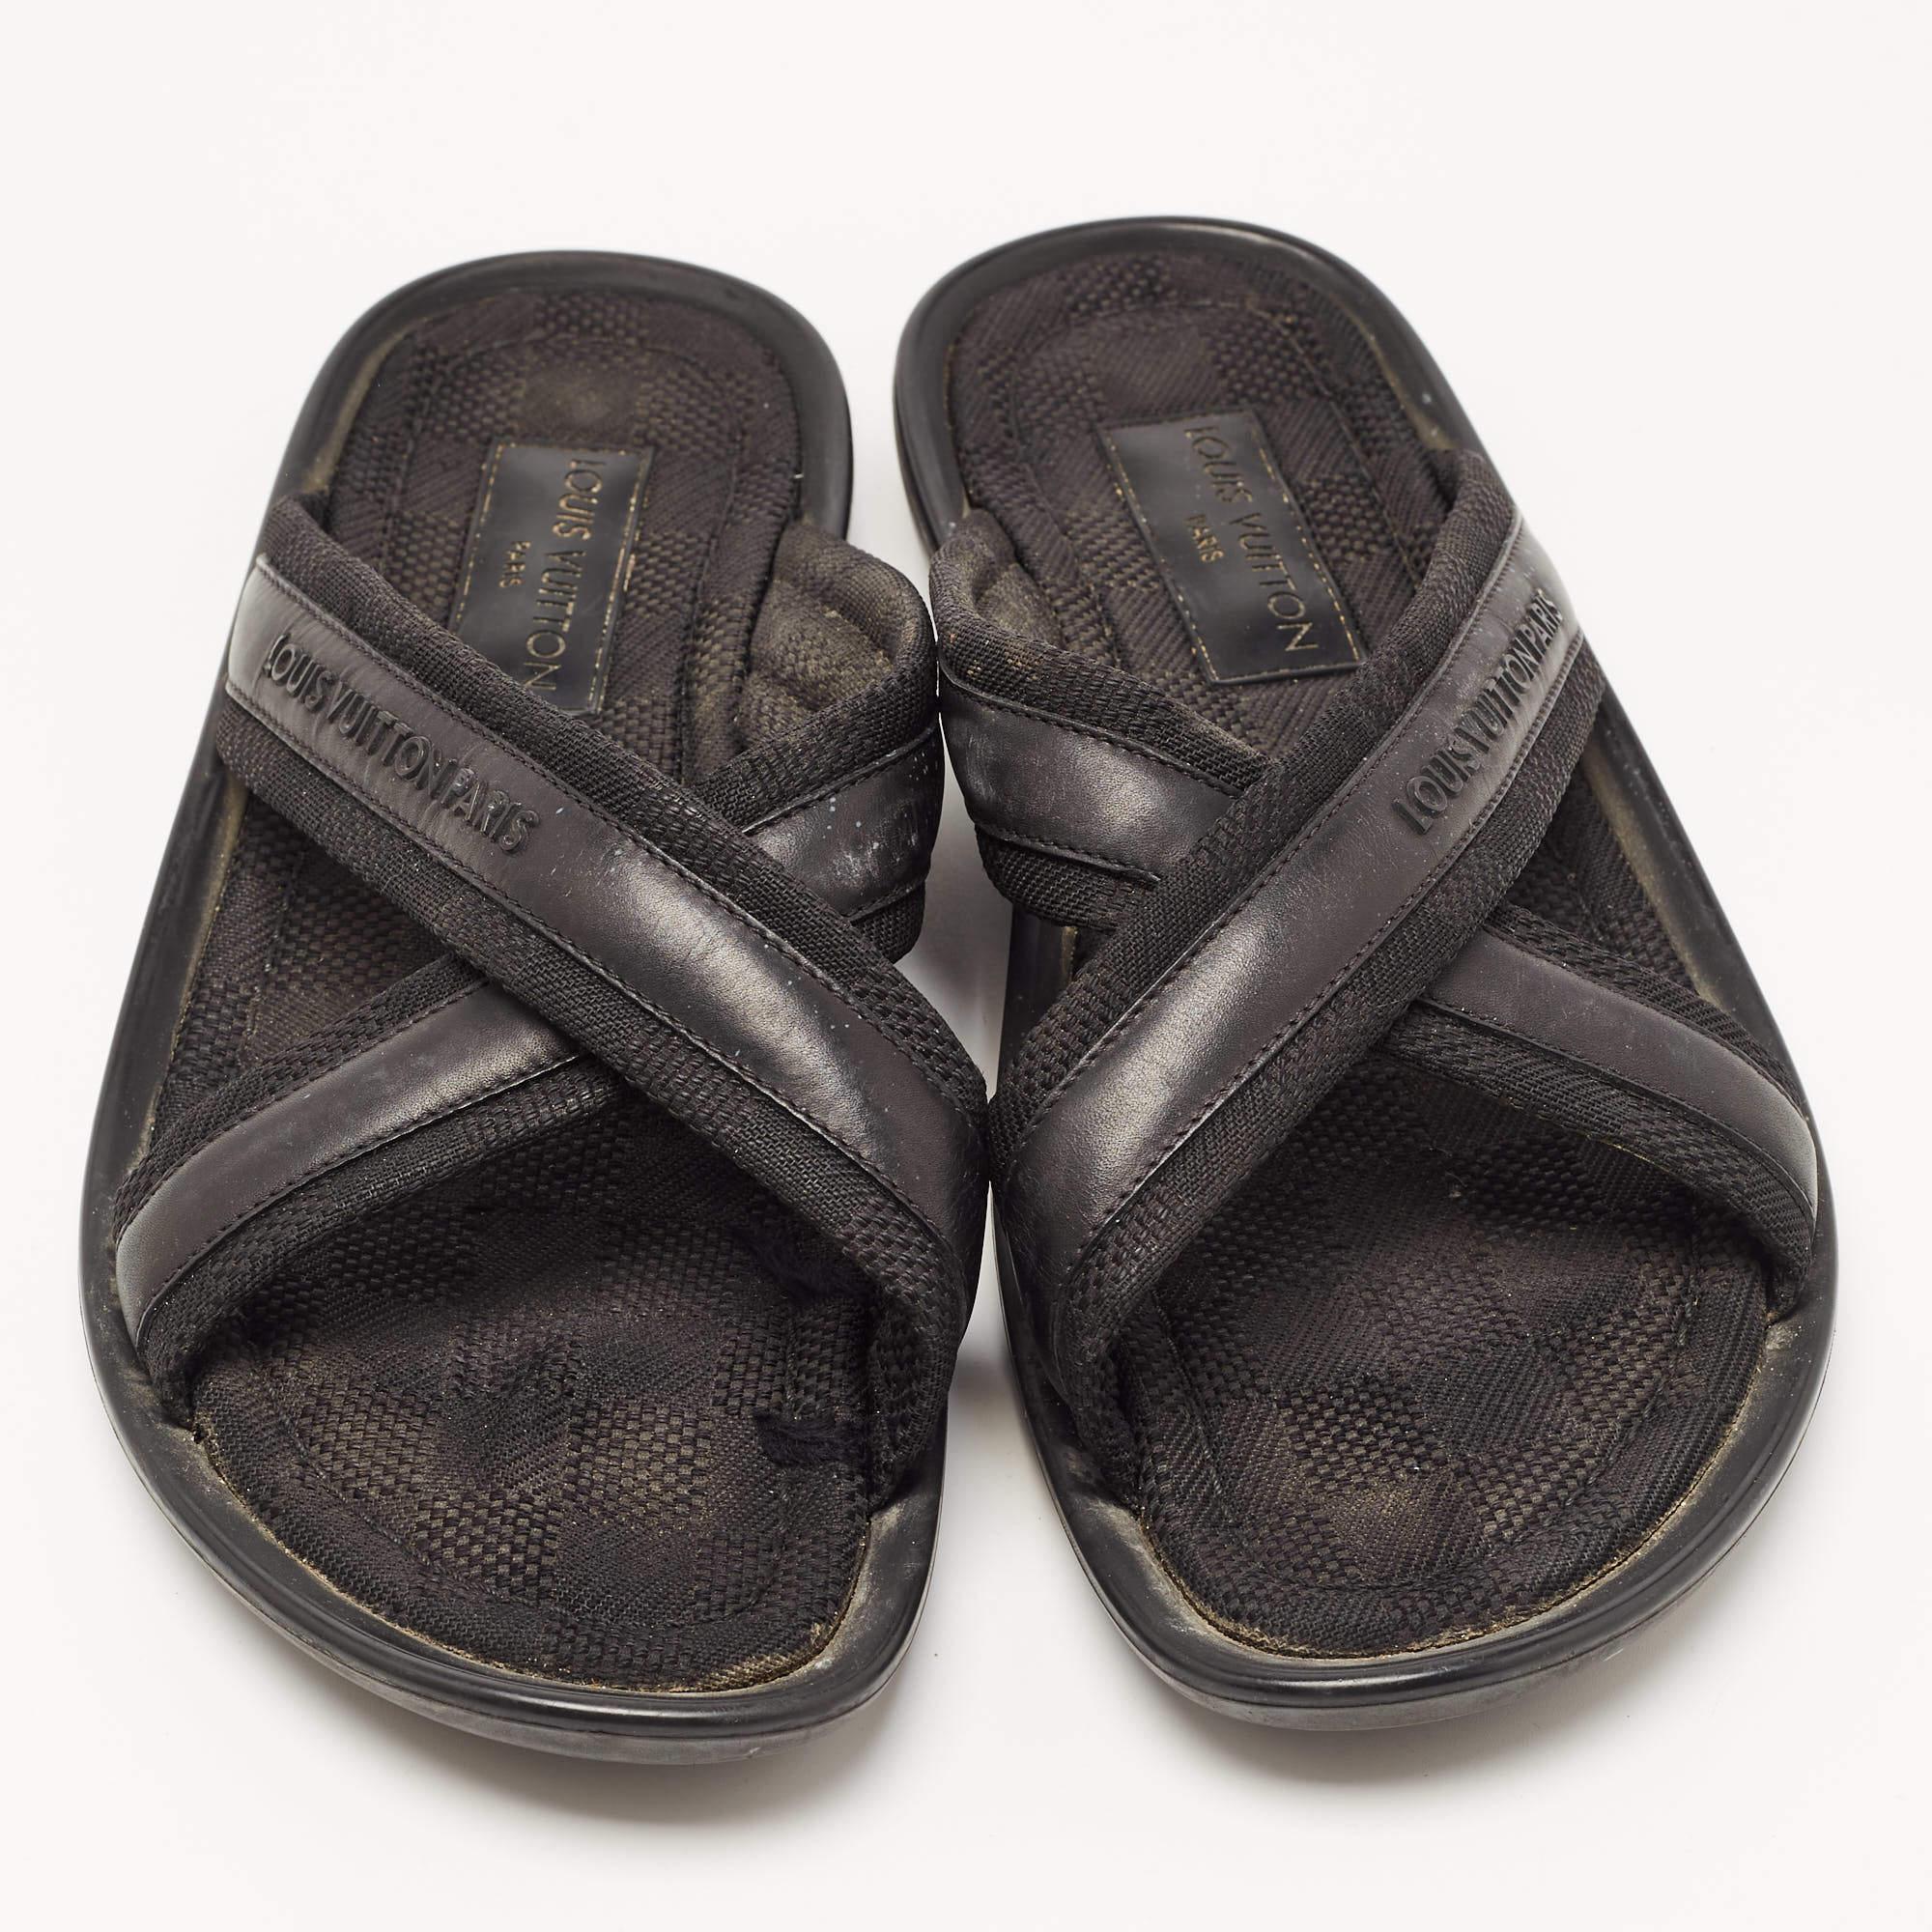 Cette paire confortable est votre premier choix lorsque vous partez pour une longue journée. Ces chaussures plates LV sont dotées d'une empeigne bien cousue et d'une semelle durable.

